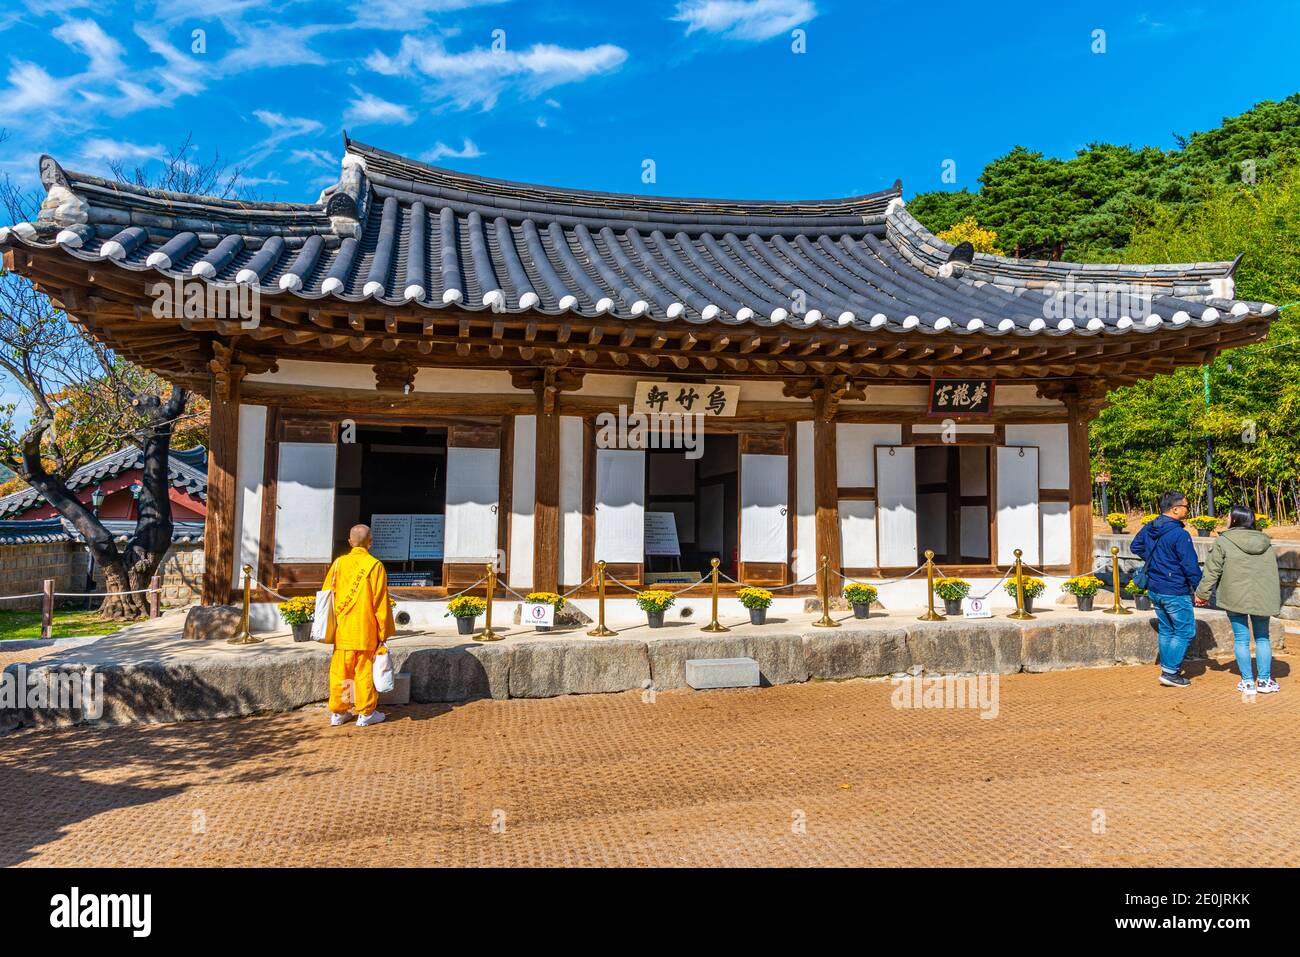 GANGNEUNG, KOREA, OCTOBER 26, 2019: Ojukheon House at Gangneung, Republic of Korea Stock Photo